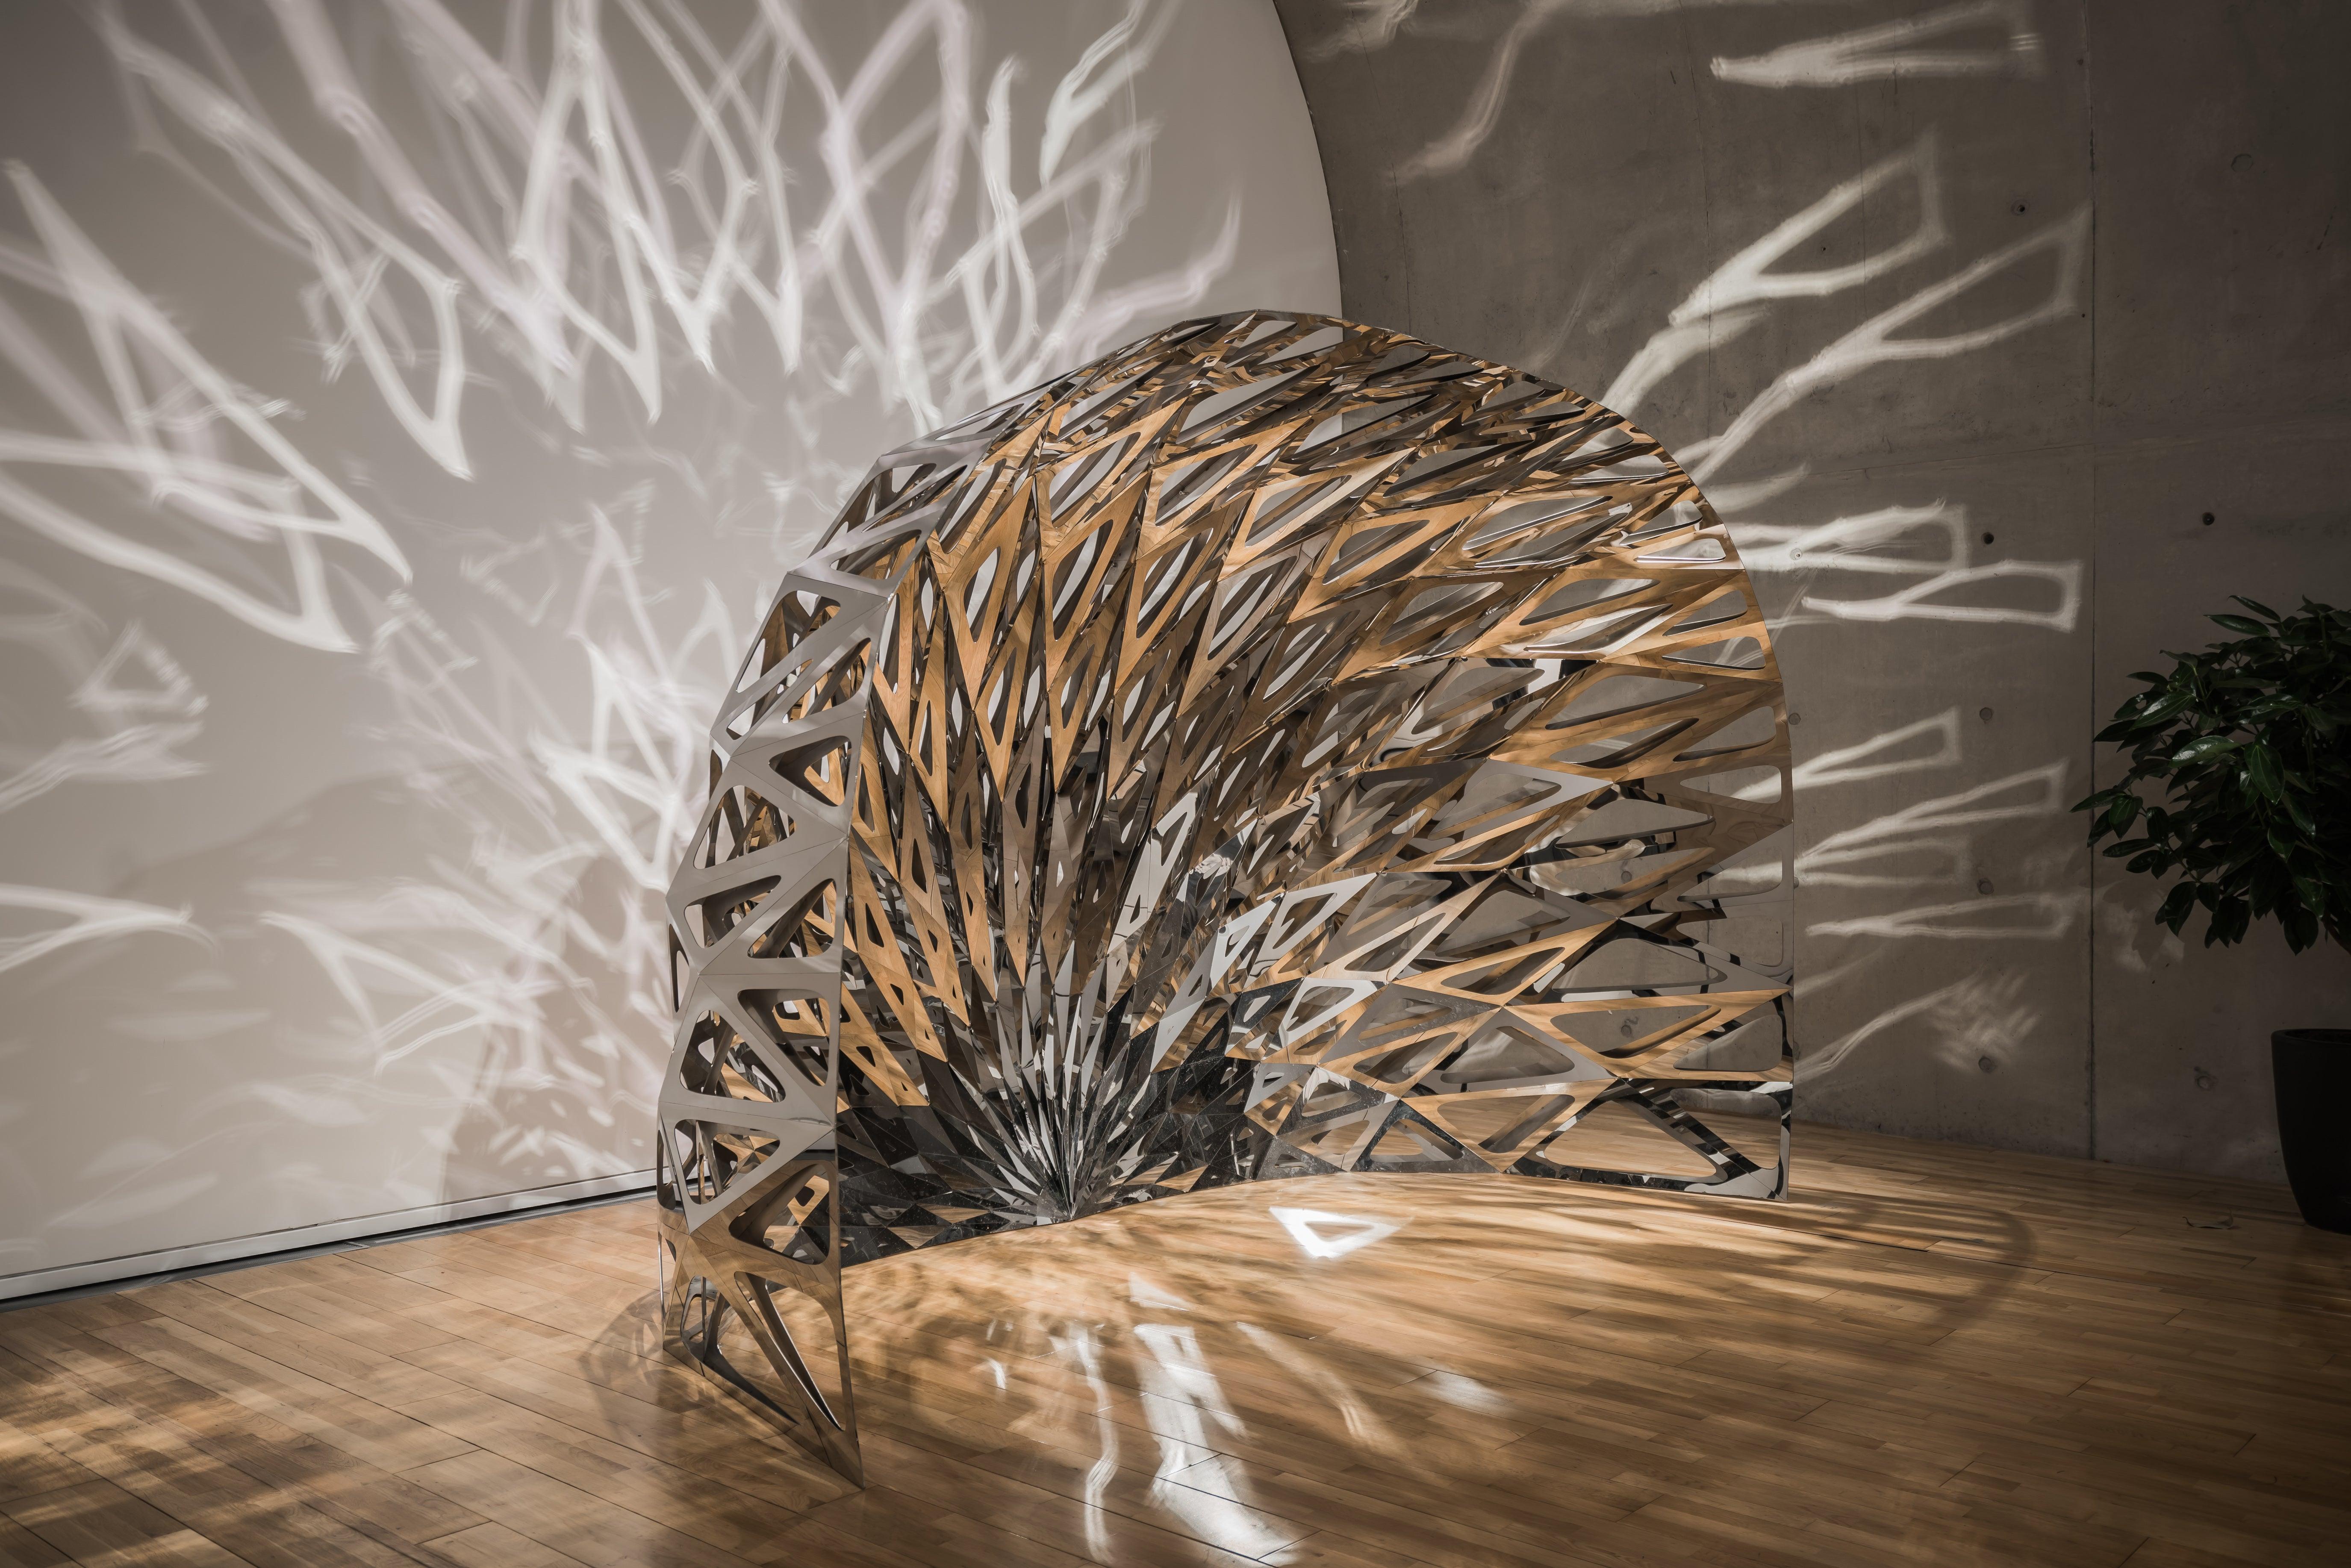 La série mashing mesh est la dernière collection de design du célèbre designer chinois Zhoujie Zhang en 2016. La série commence par l'obsession de Zhoujie pour la conception paramétrique et les grilles de maillage. Il simule les vagues de l'eau à